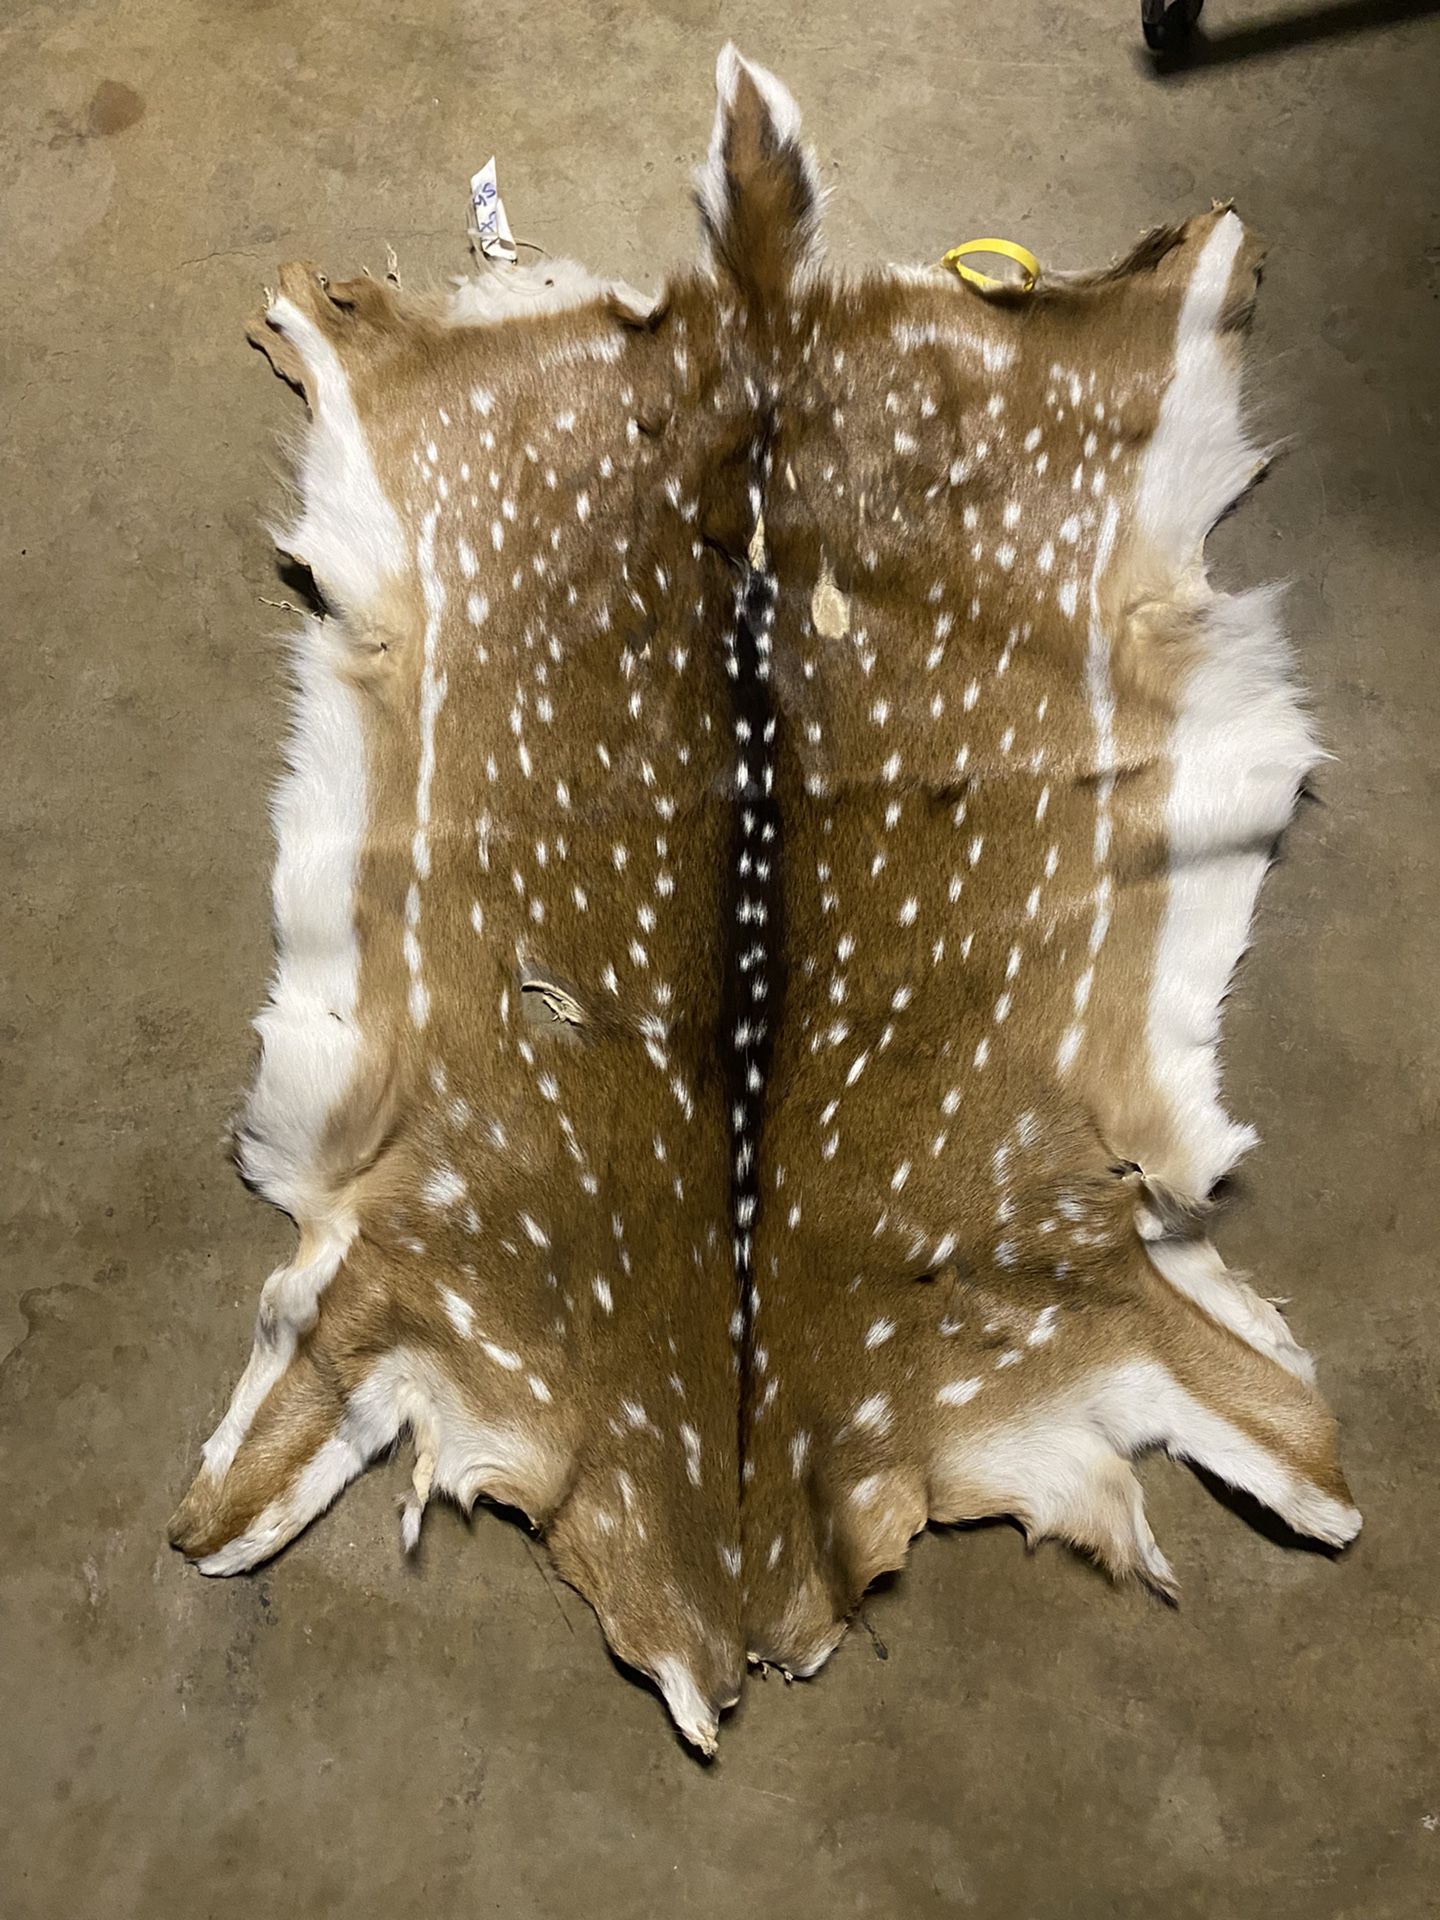 Axis Deer Hide (tanned) for Sale in San Antonio, TX - OfferUp